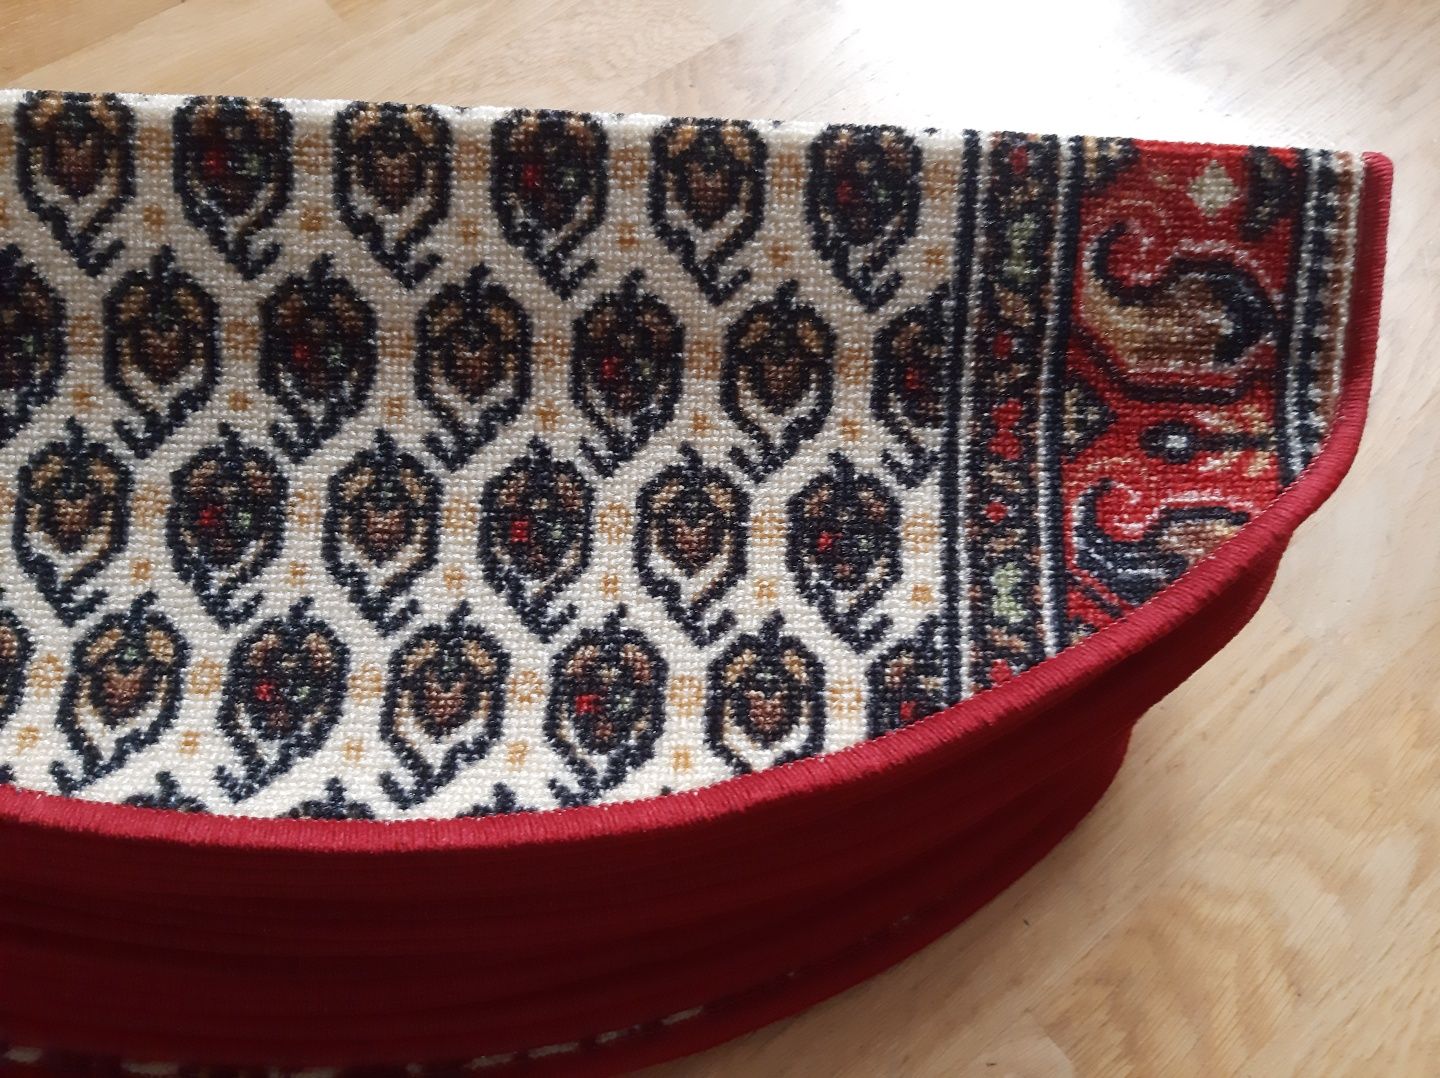 Nowe nakladki dywanowe na schody dywaniki